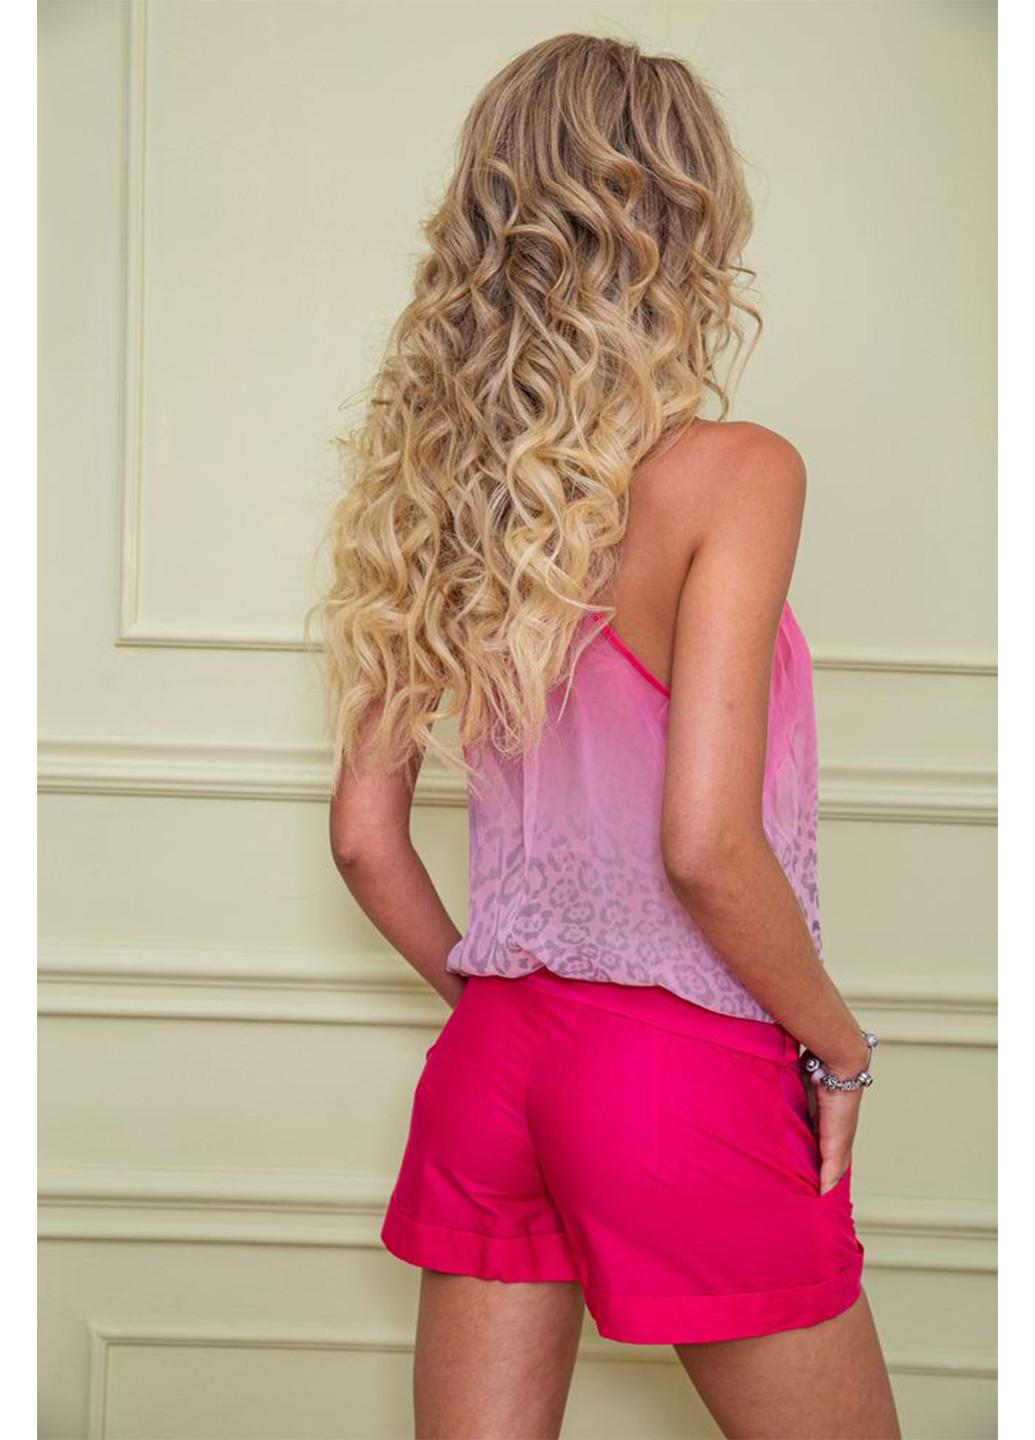 Комбинезон Ager комбинезон-шорты леопардовый розовый кэжуал полиэстер, шифон